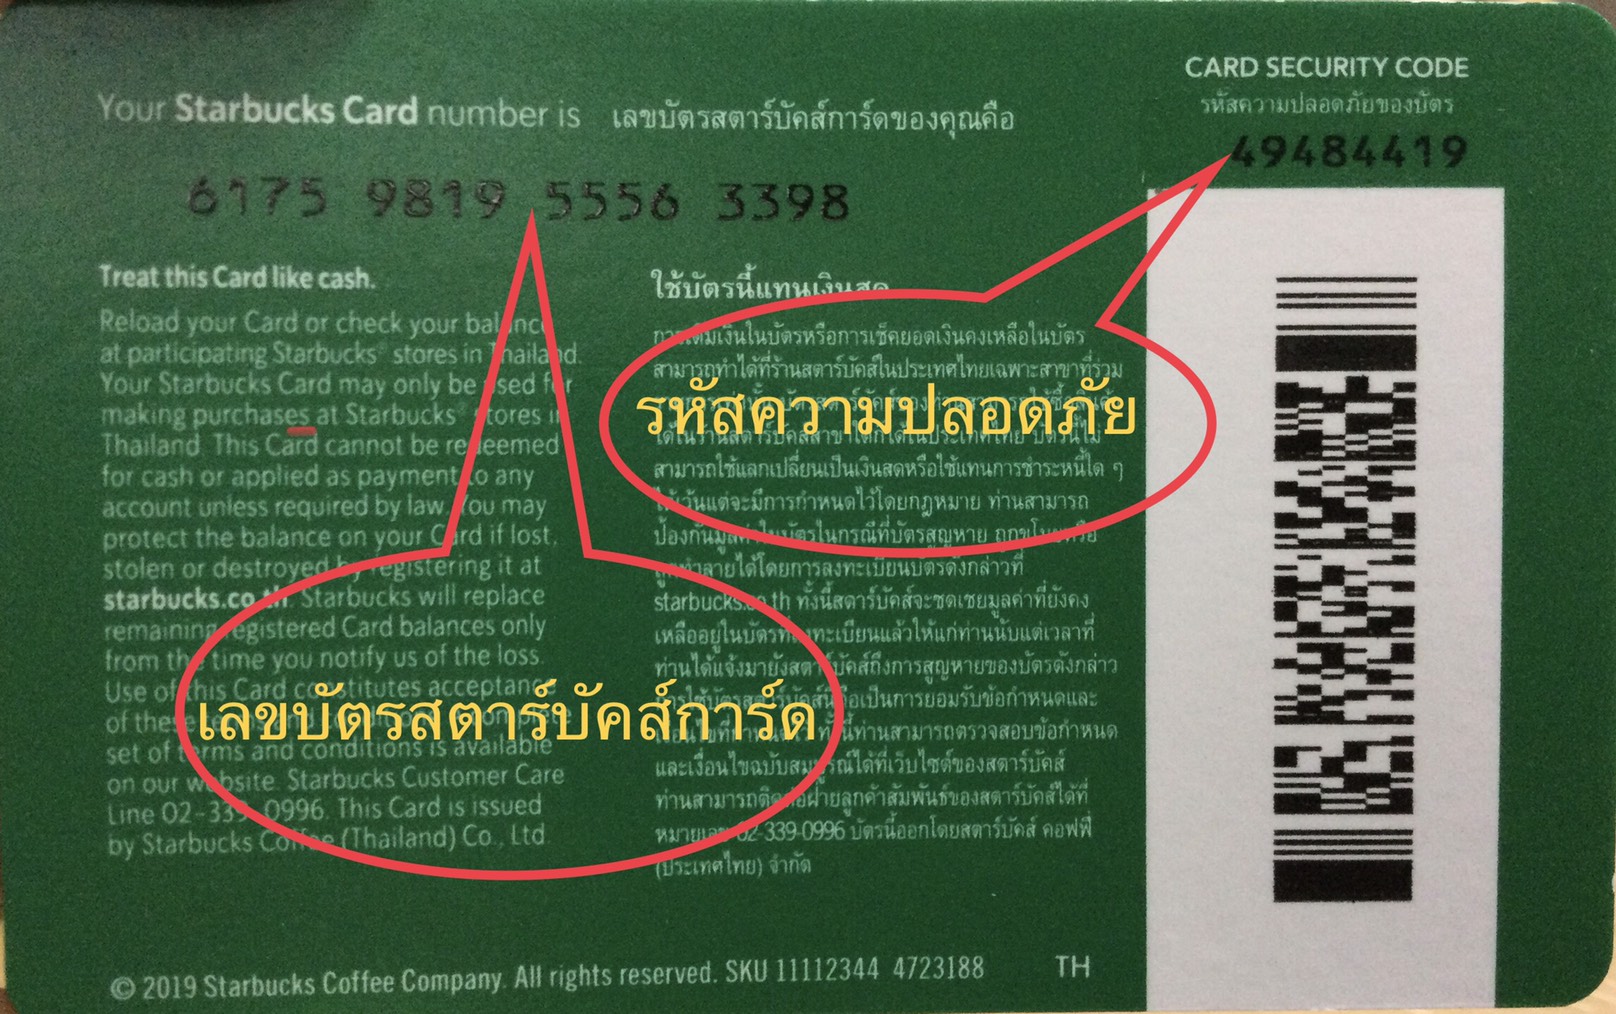 เกี่ยวกับ Starbucks card มูลค่า 500 บาท ((ส่งรหัสทางแชทเท่านั้น ))